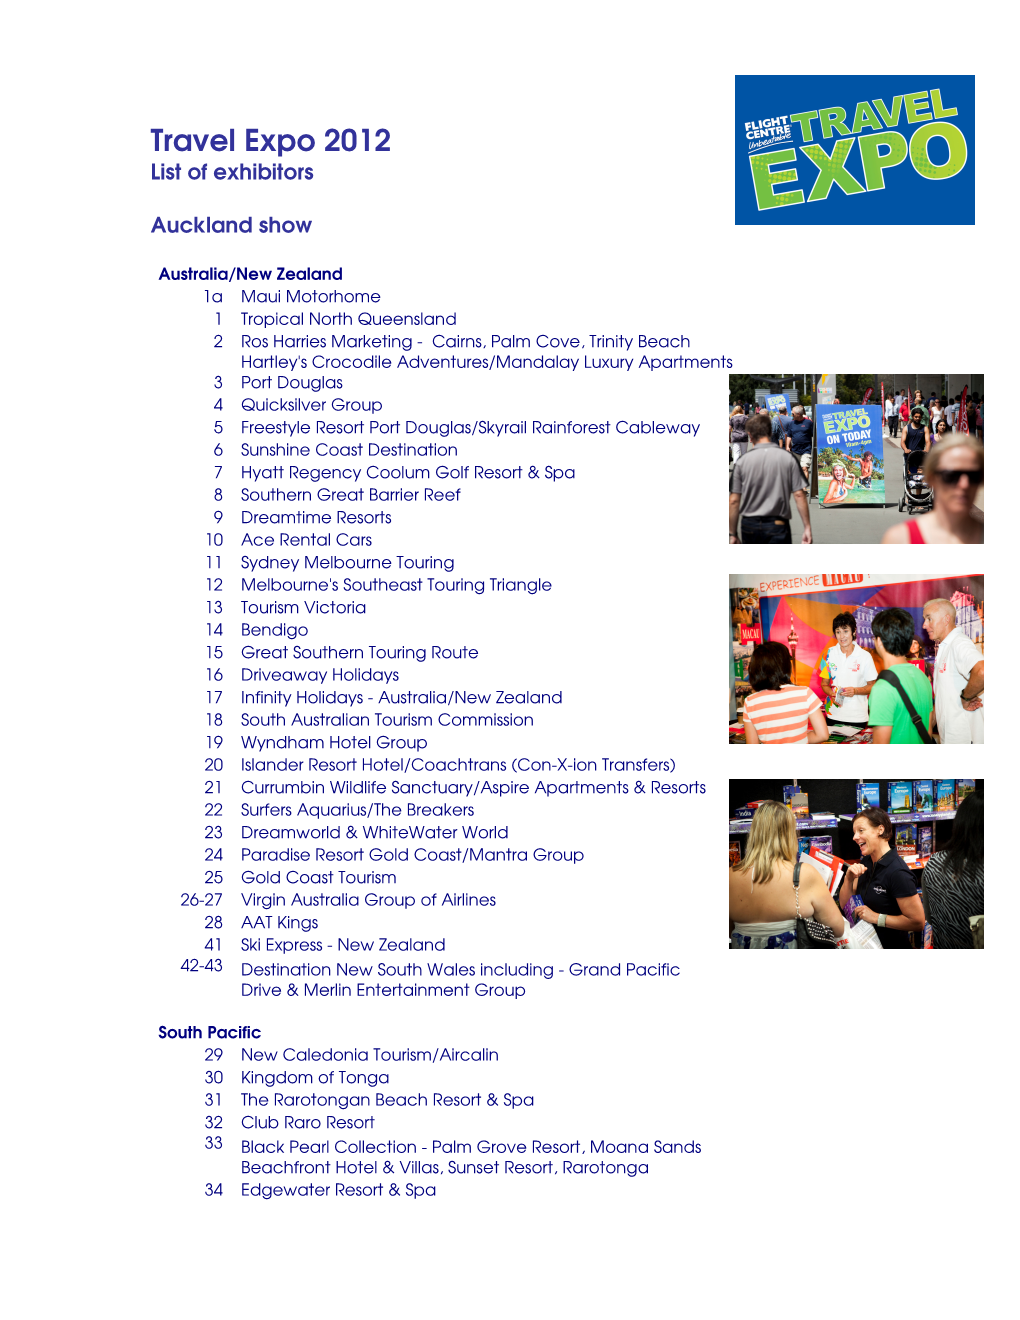 Travel Expo 2012 List of Exhibitors